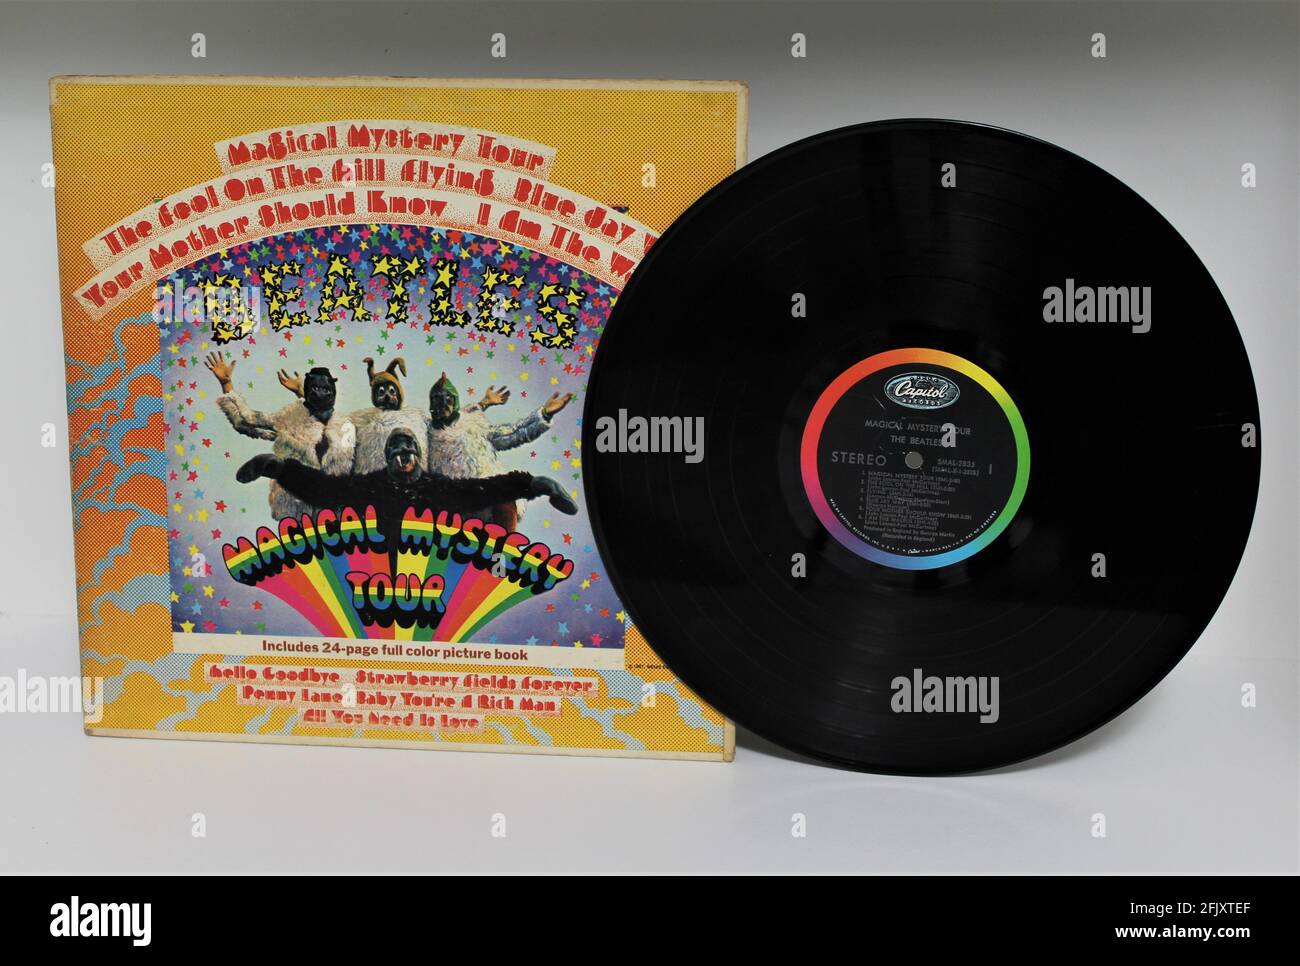 Magical Mystery Tour est un disque du groupe de rock anglais The Beatles. Album de musique sur disque vinyle LP. La musique pop psychédélique est leur principal genre. Banque D'Images